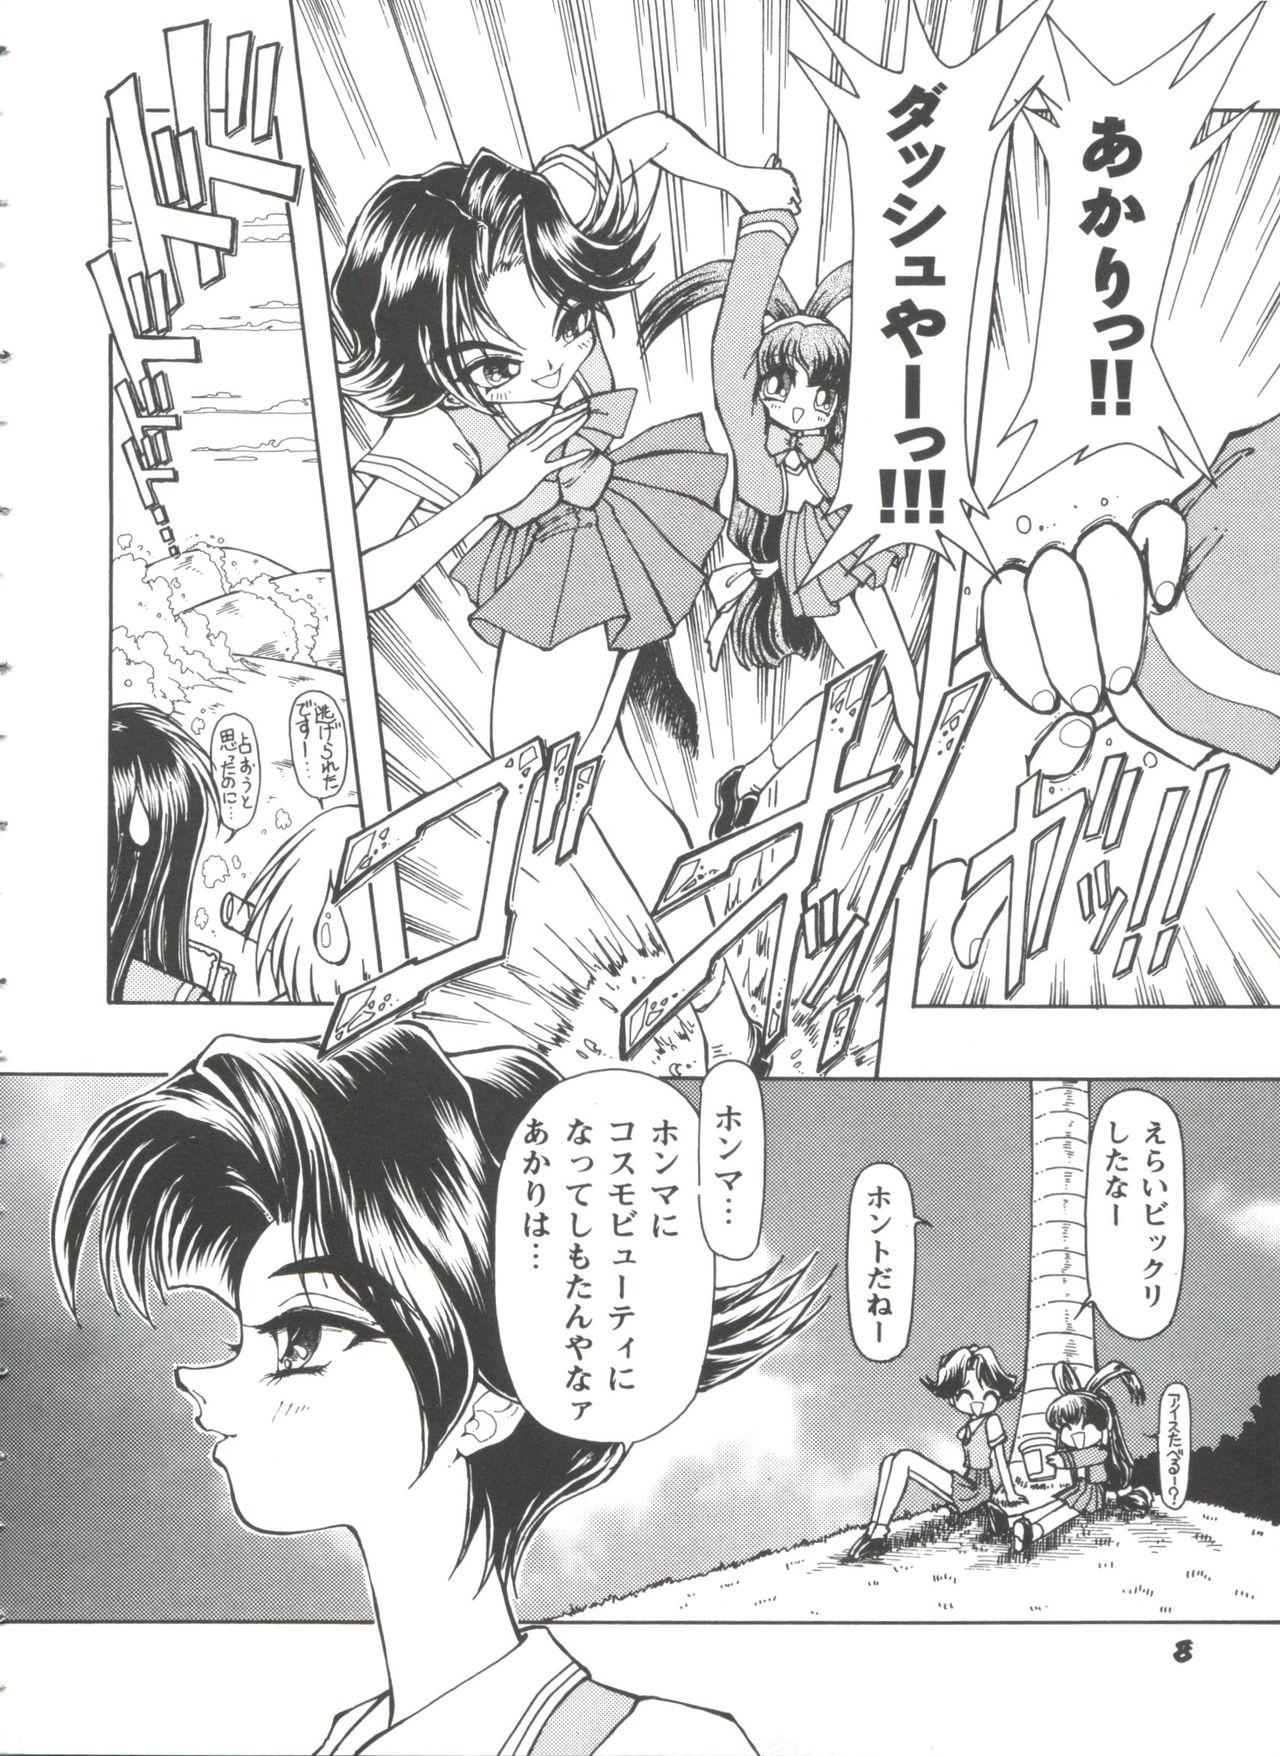 Bj Girl's Parade 98 Take 10 - Street fighter Darkstalkers Sakura taisen Battle athletes Akihabara dennou gumi Naughty - Page 9